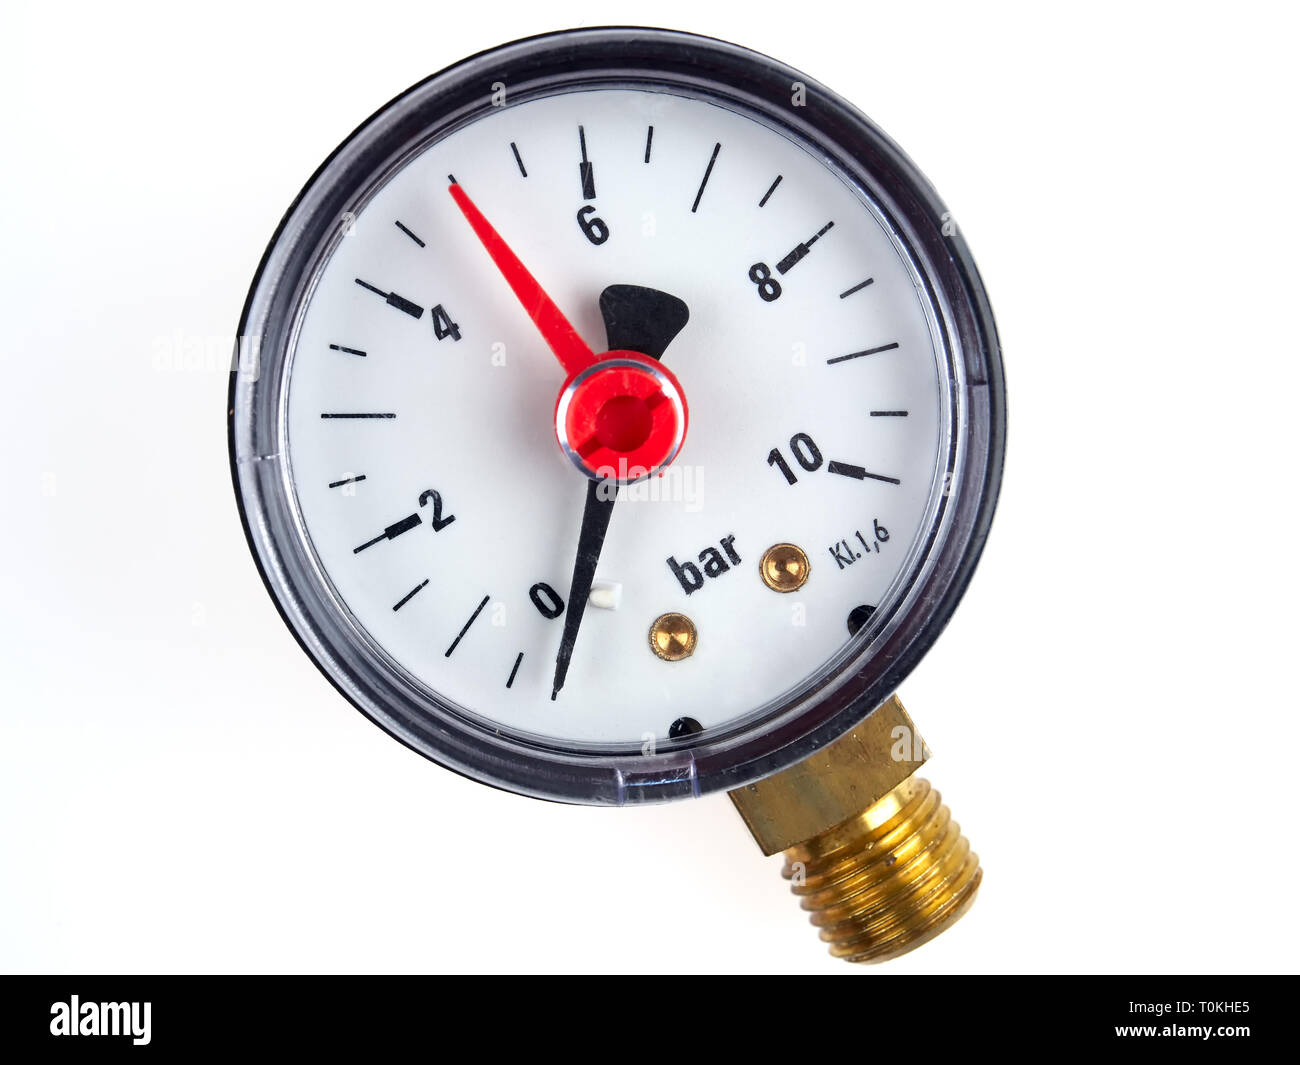 Manometro di pressione o manometro per acqua impianti pompa